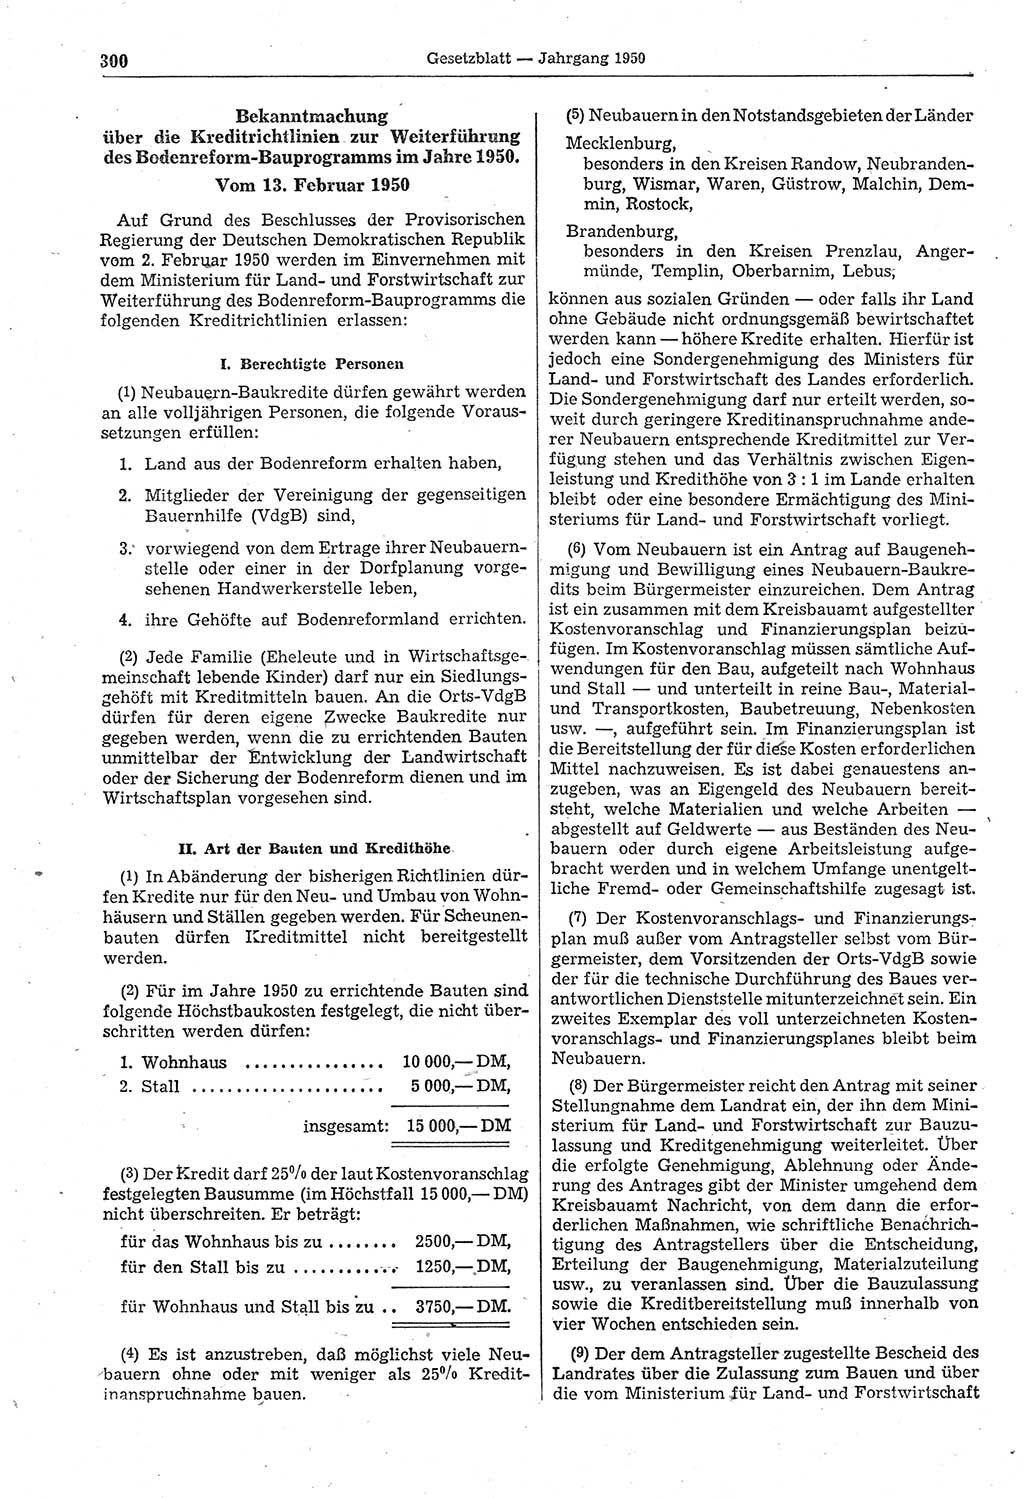 Gesetzblatt (GBl.) der Deutschen Demokratischen Republik (DDR) 1950, Seite 300 (GBl. DDR 1950, S. 300)